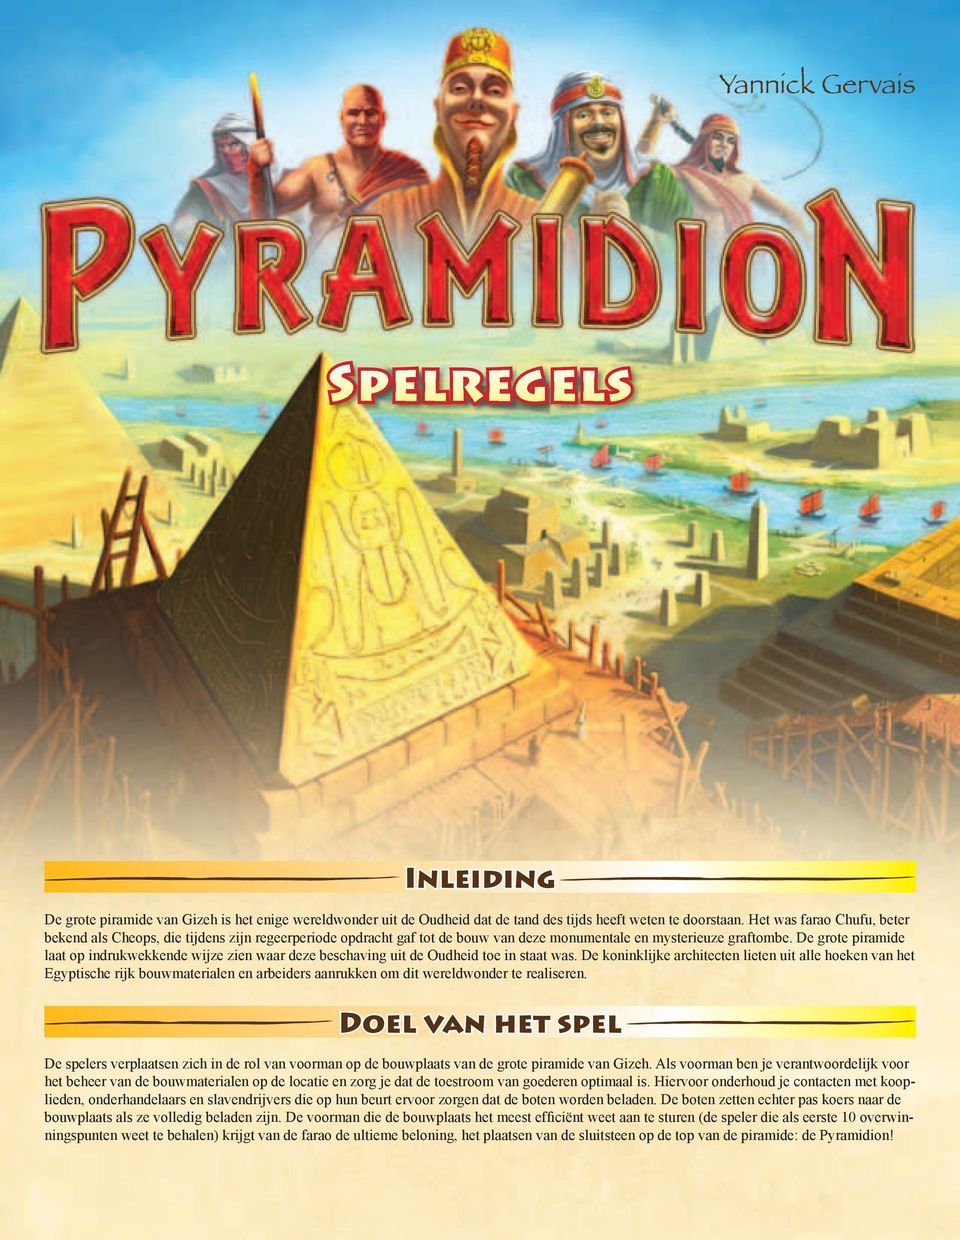 De grote piramide laat op indrukwekkende wijze zien waar deze beschaving uit de Oudheid toe in staat was.